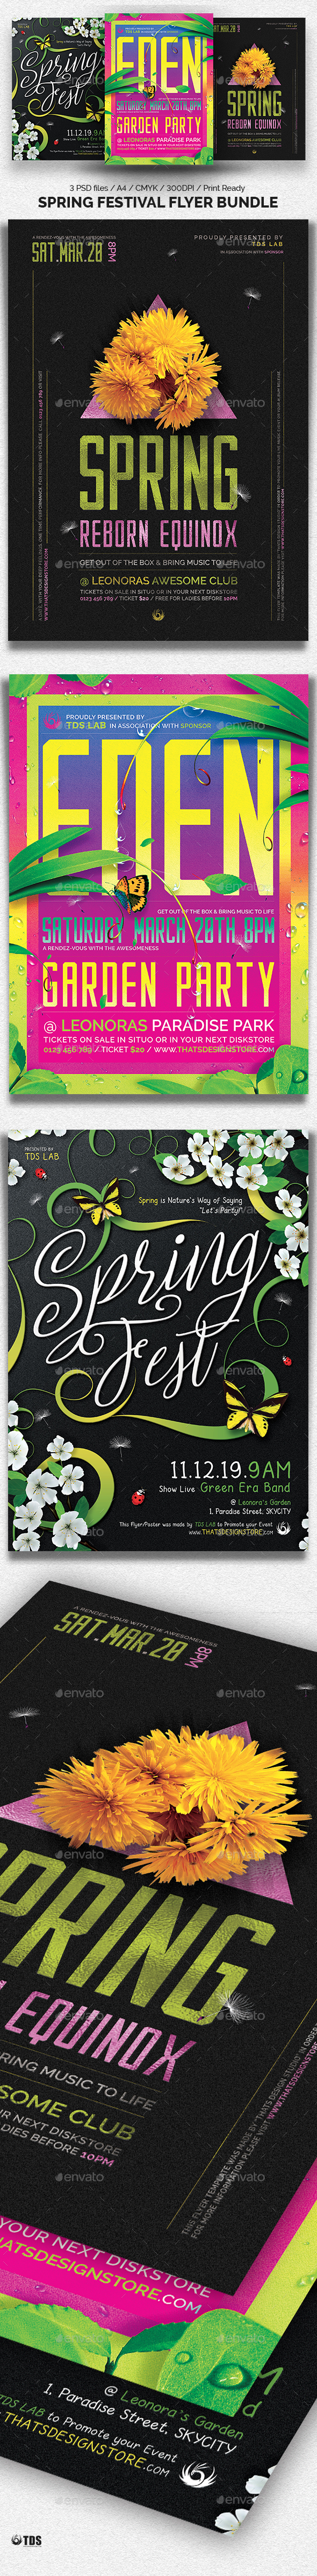 Spring Festival Flyer Bundle